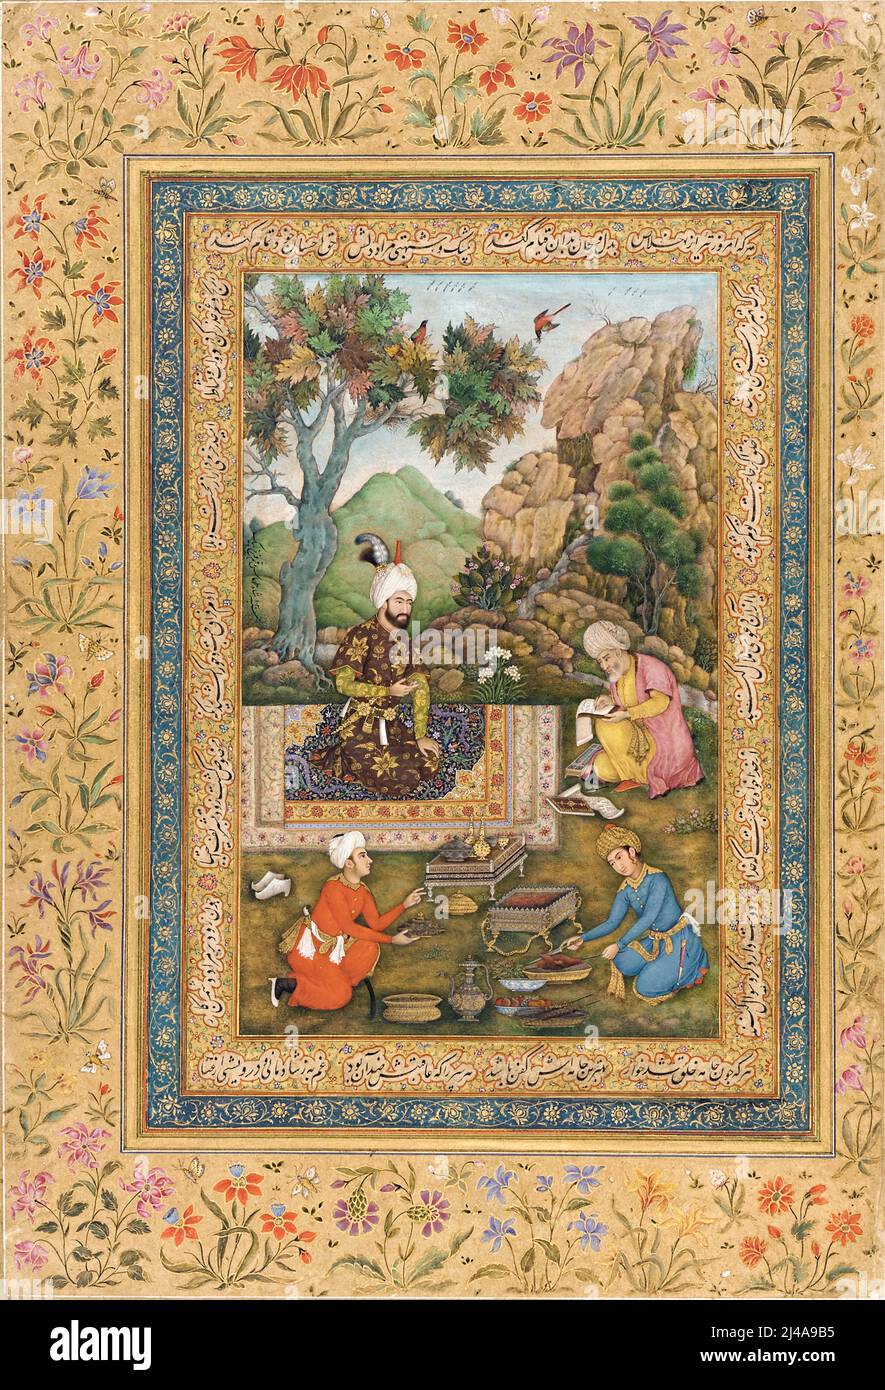 Shah Tahmasp in montagna dall'artista indiano Farrukh Beg (c.1547-1619) pittore di corte al grande imperatore Moghul Shah Jaha. Foto Stock